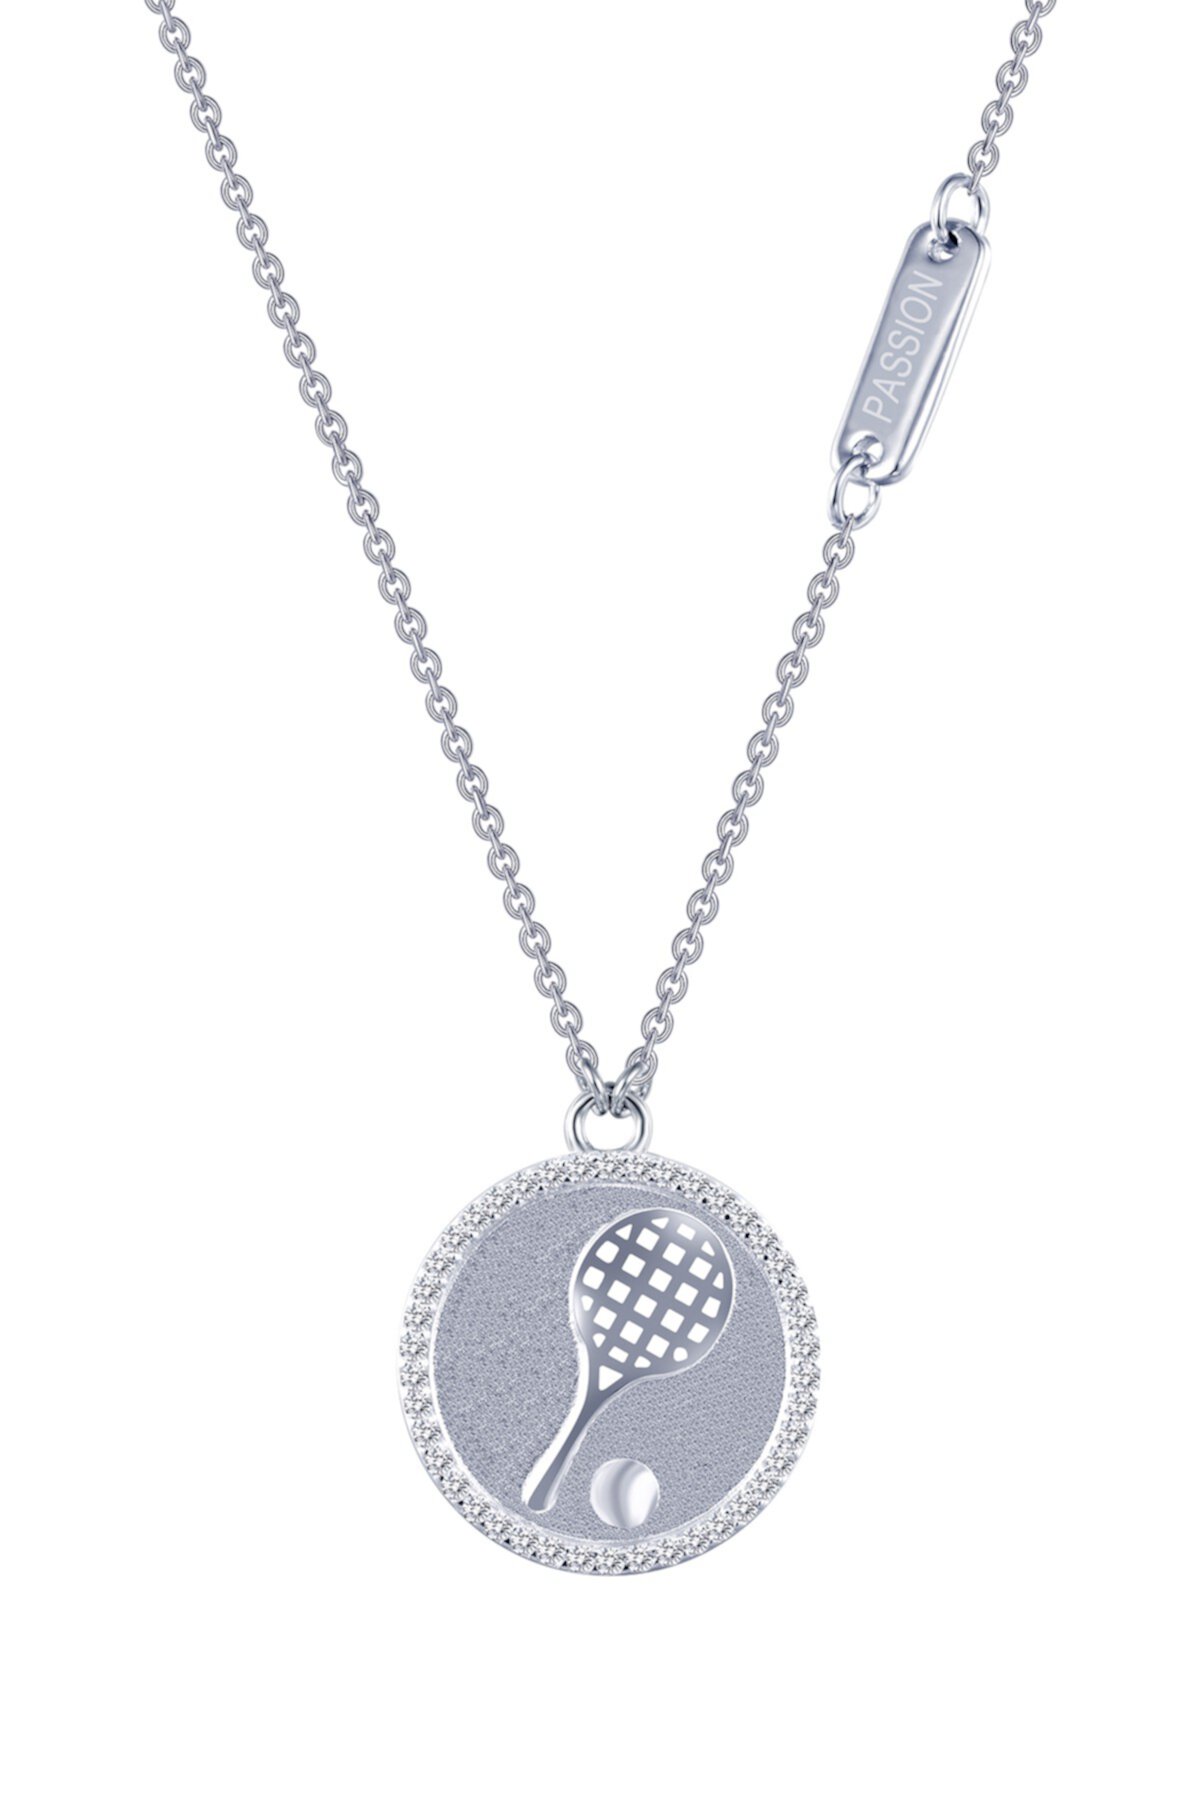 Ожерелье с подвеской для тенниса из стерлингового серебра с платиновым покрытием и микропаве с имитацией бриллианта Sentimentals LaFonn